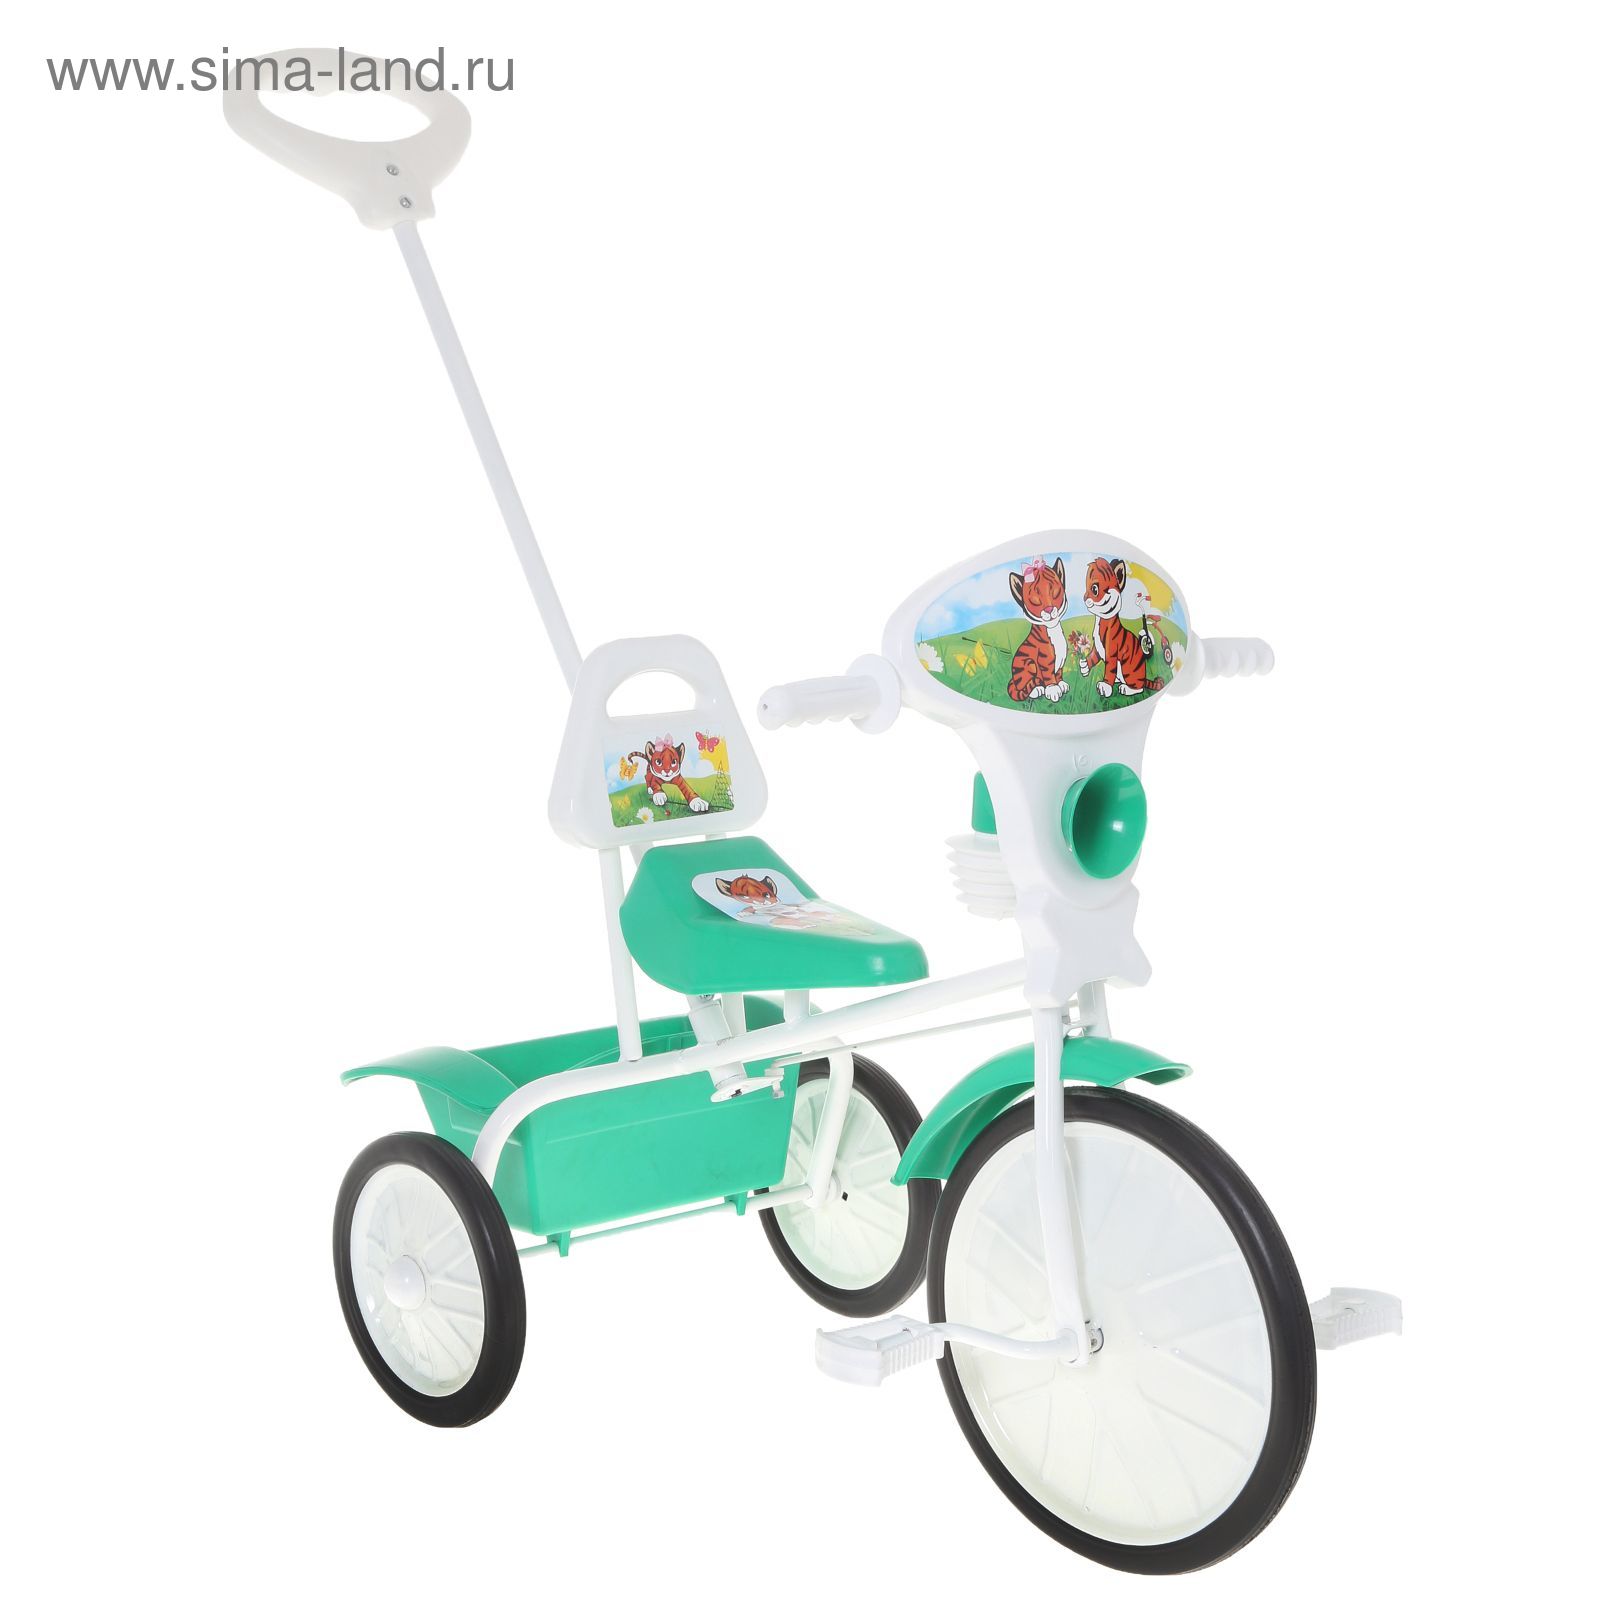 Велосипед трехколесный "Малыш" 09/3, цвет: зеленый, фасовка: 2 шт.